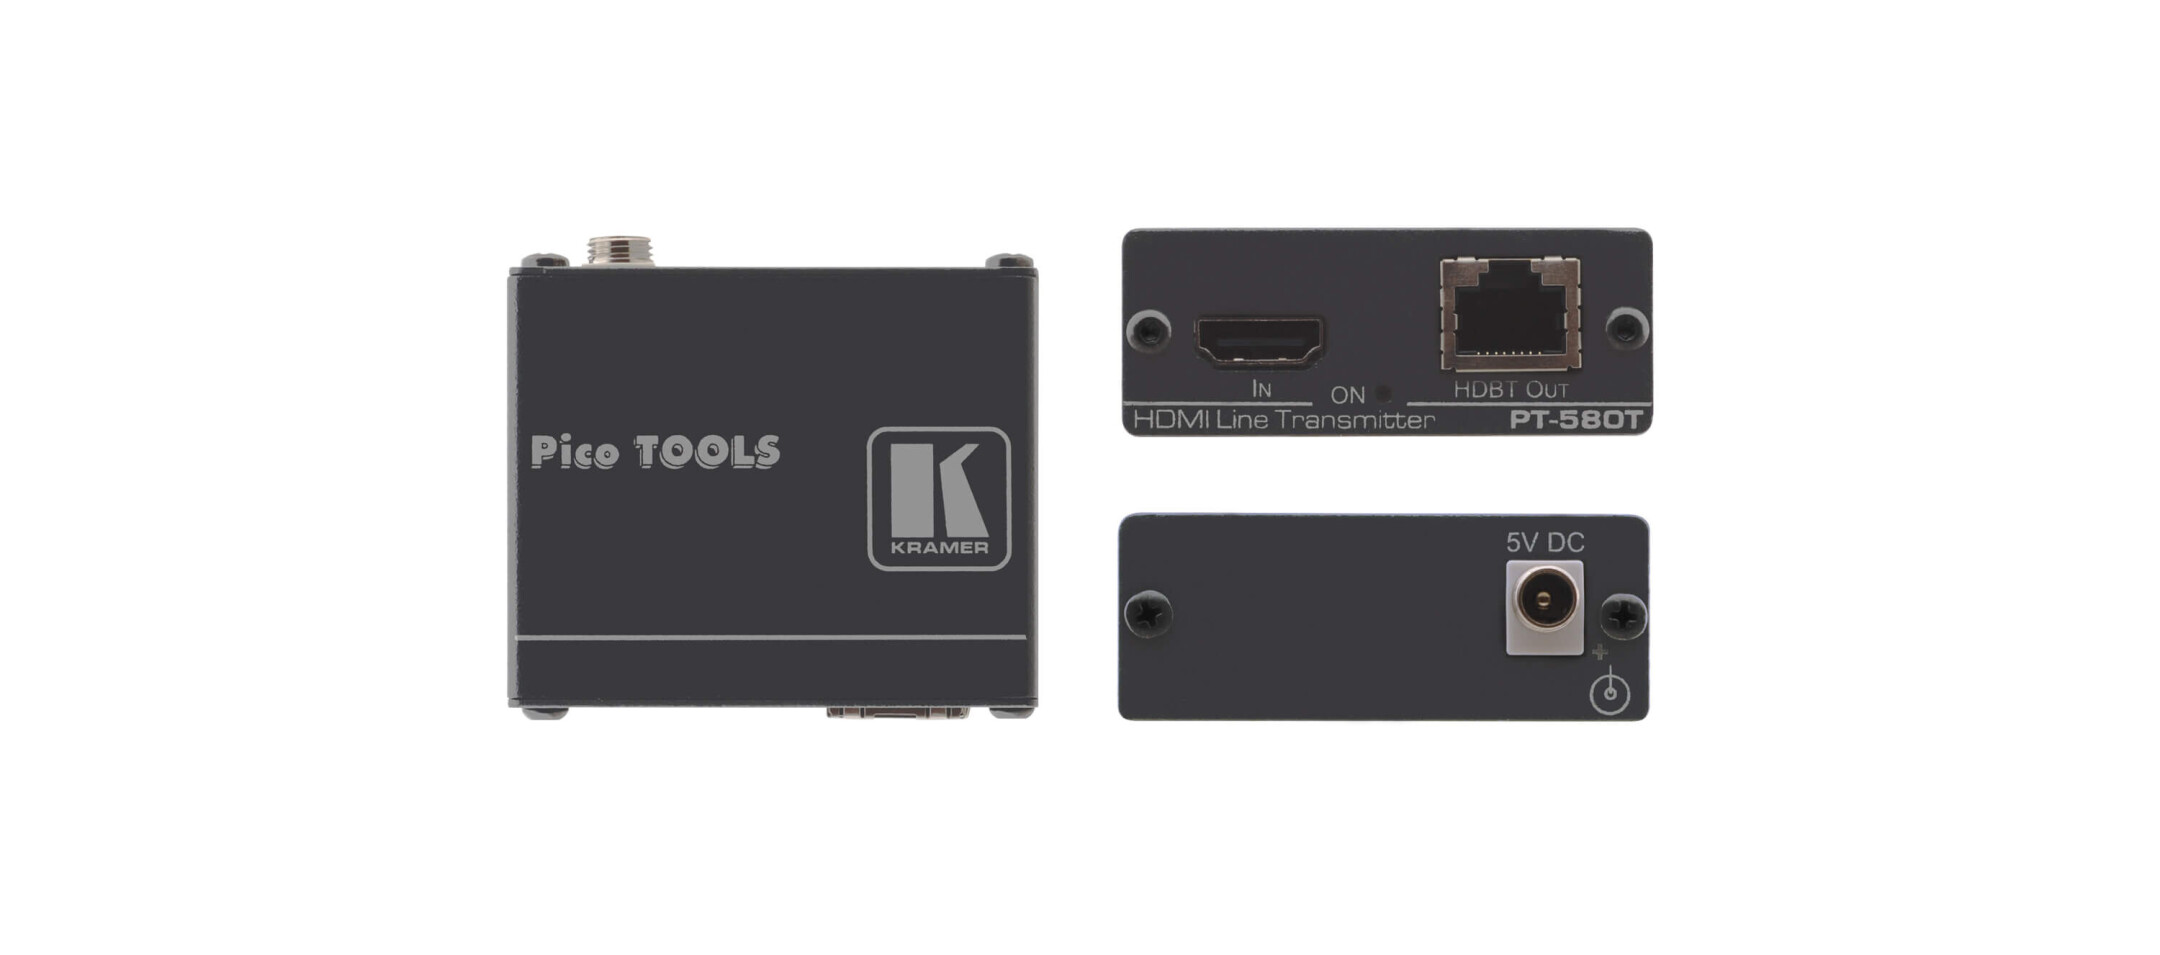 Kramer-PT-580T-Compacte-zender-voor-4K-UHD-HDMI-HDCP-2-2-via-HDBaseT-twisted-pair